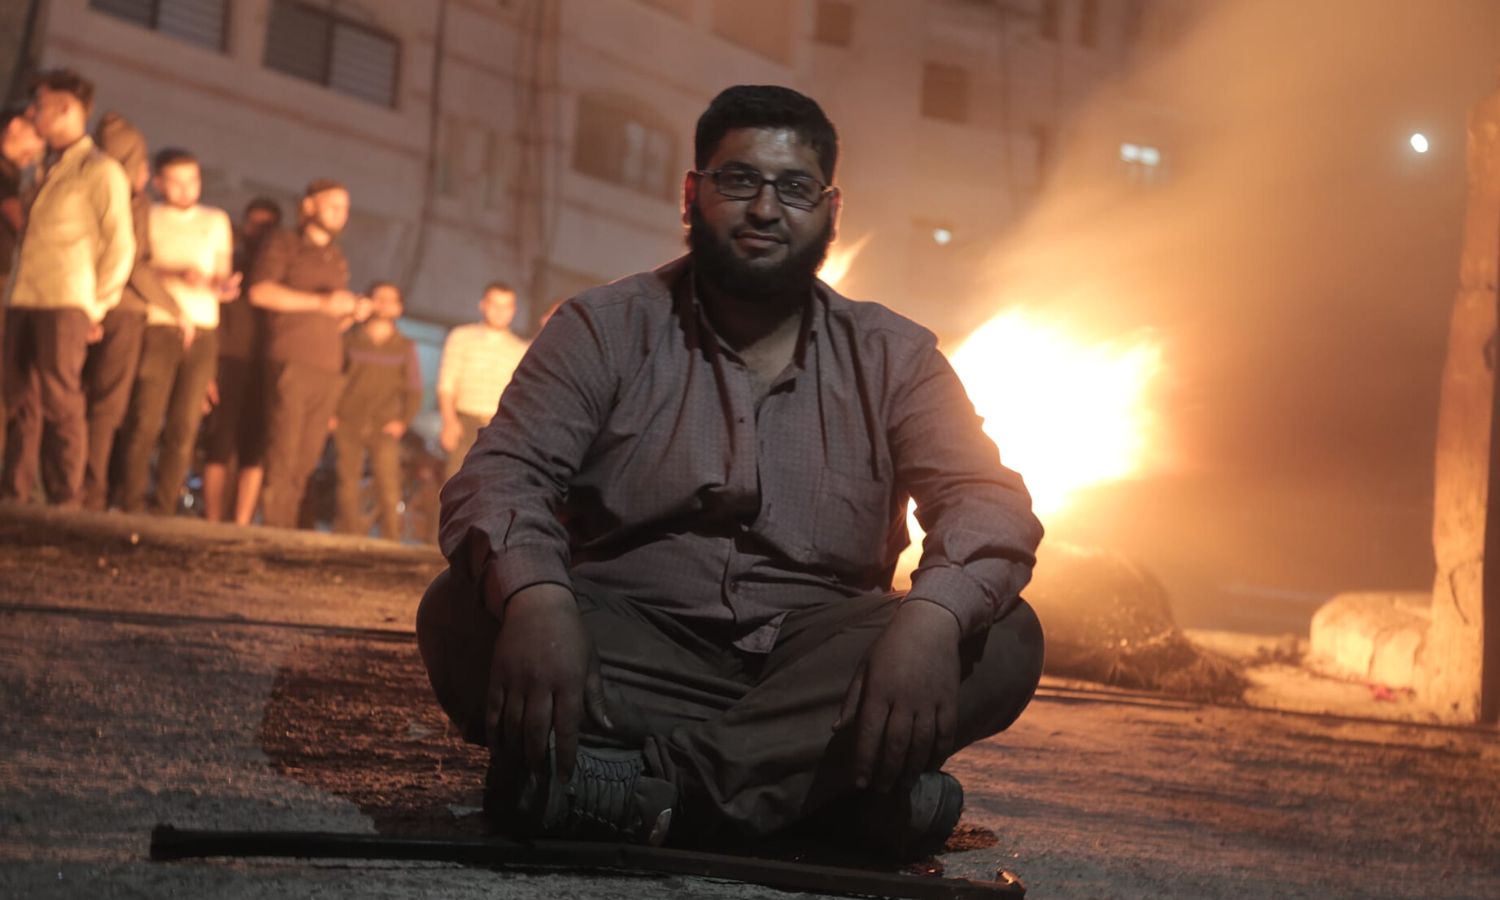 الناشط الإعلامي محمد عبد اللطيف (أبو غنوم) خلال إحدى المظاهرات بريف حلب- 23 من أيار 2022 (محمد أبو غنوم/ فيس بوك)